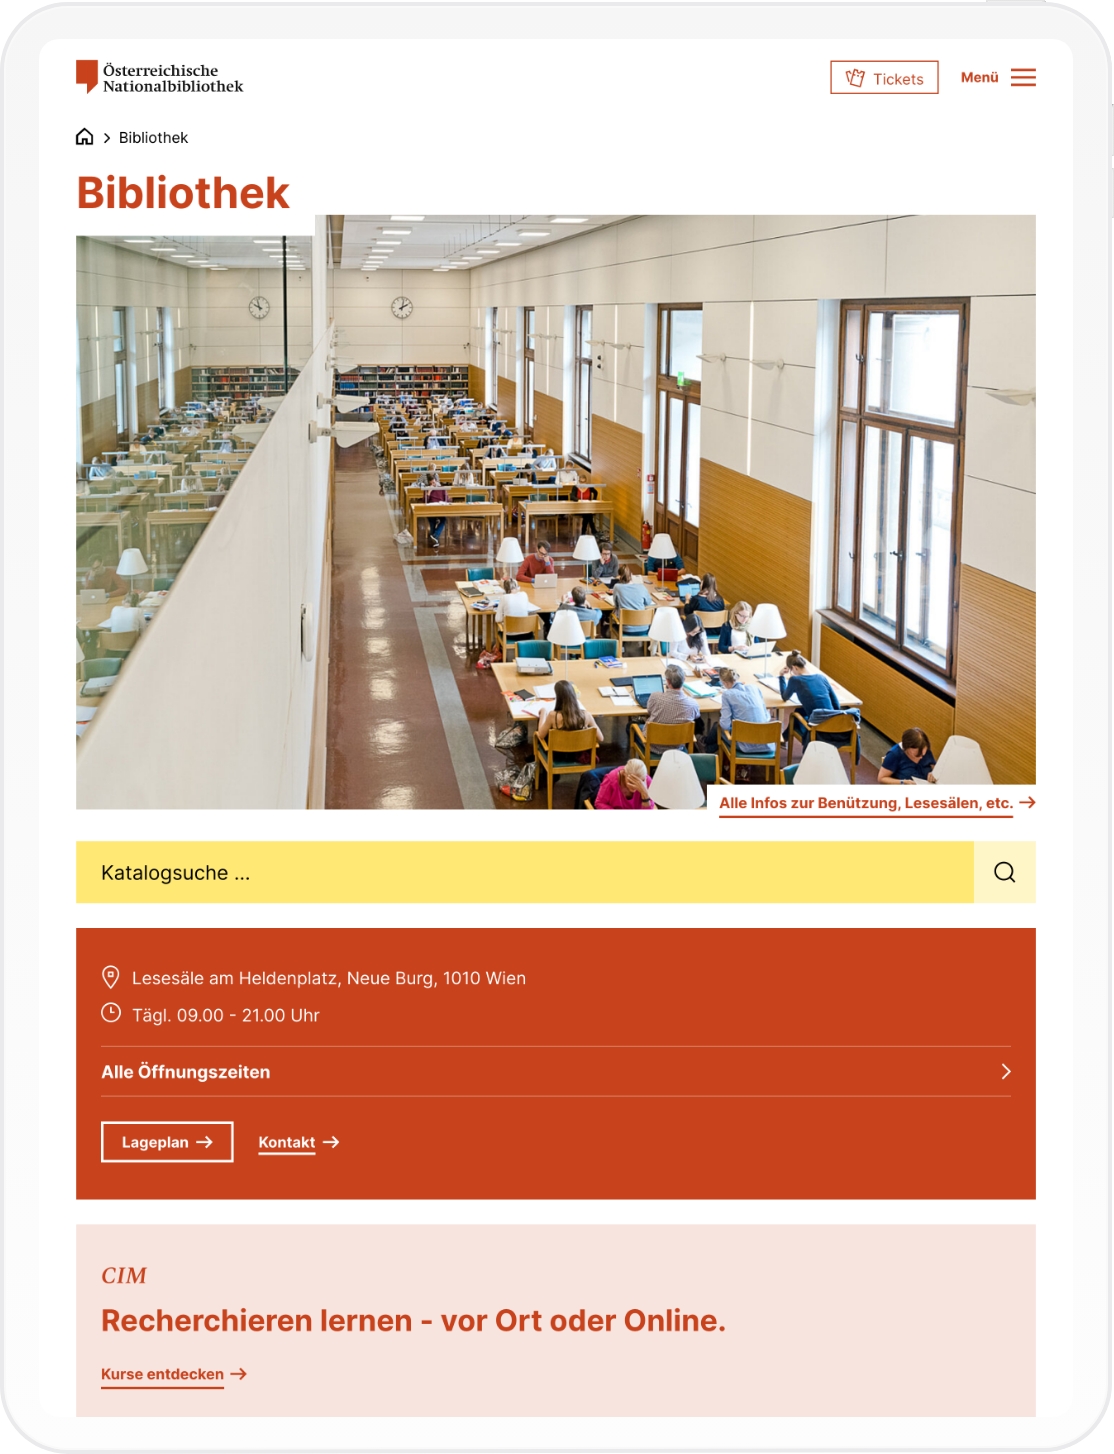 Mobiles -Mockup der Bibliotheks-Startseite der Österreichischen Nationalbibliothek